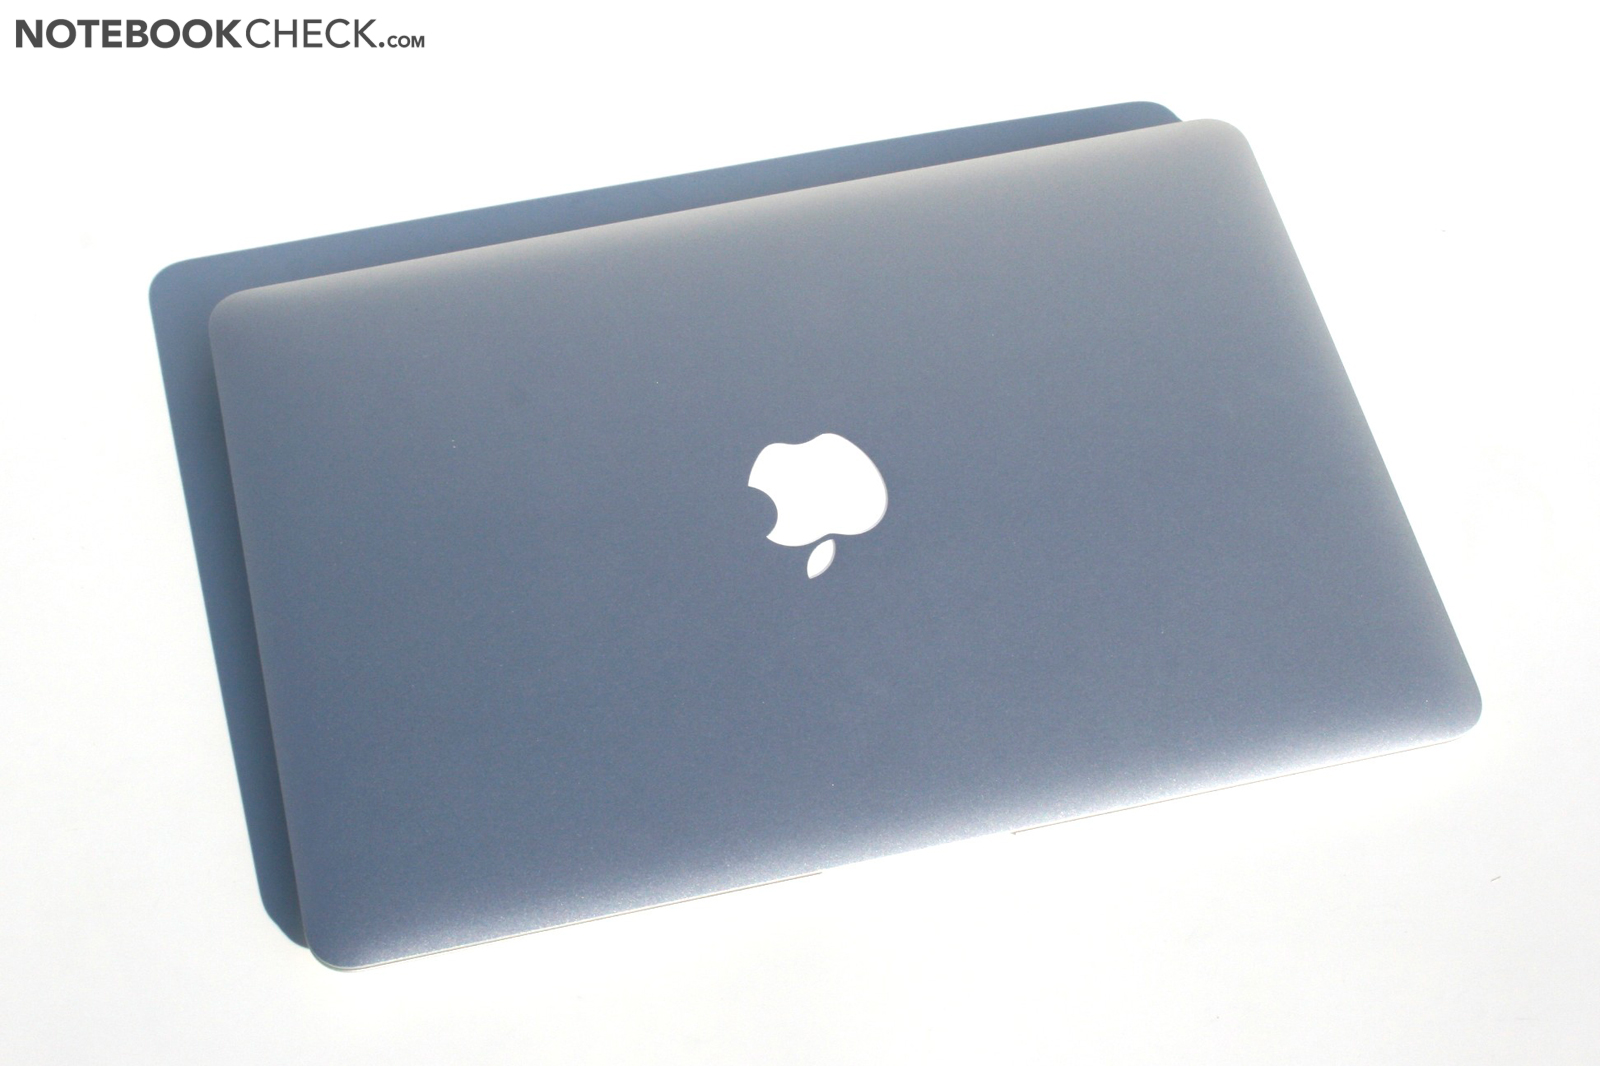 Apple macbook air 13